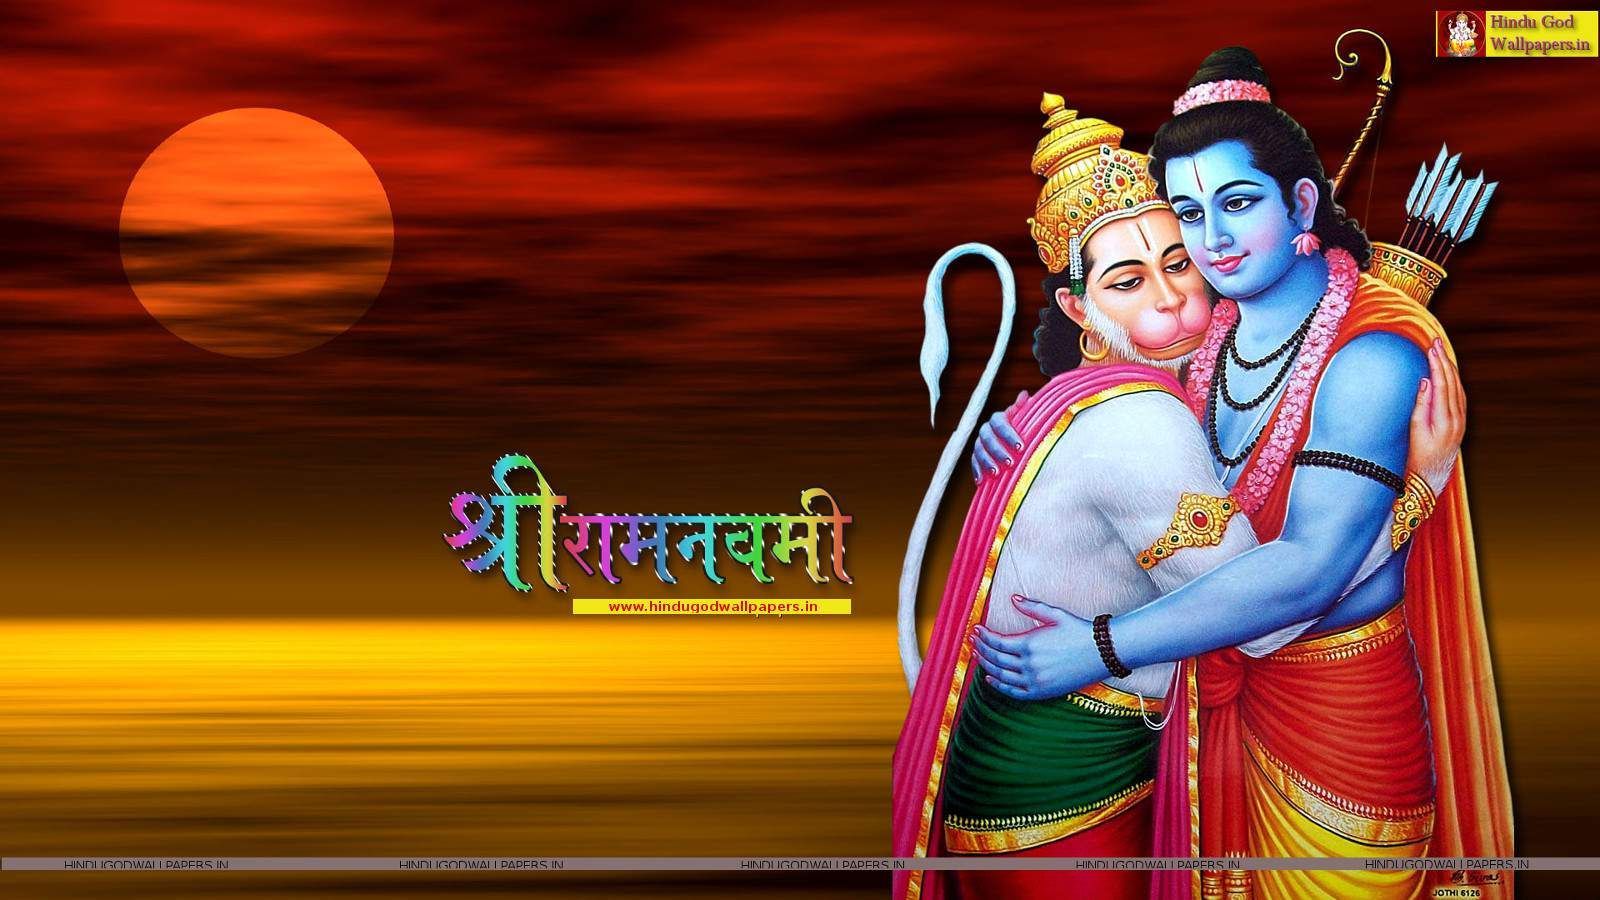 Ram Navami Image HD. Ram navami image, Happy ram navami, Ram